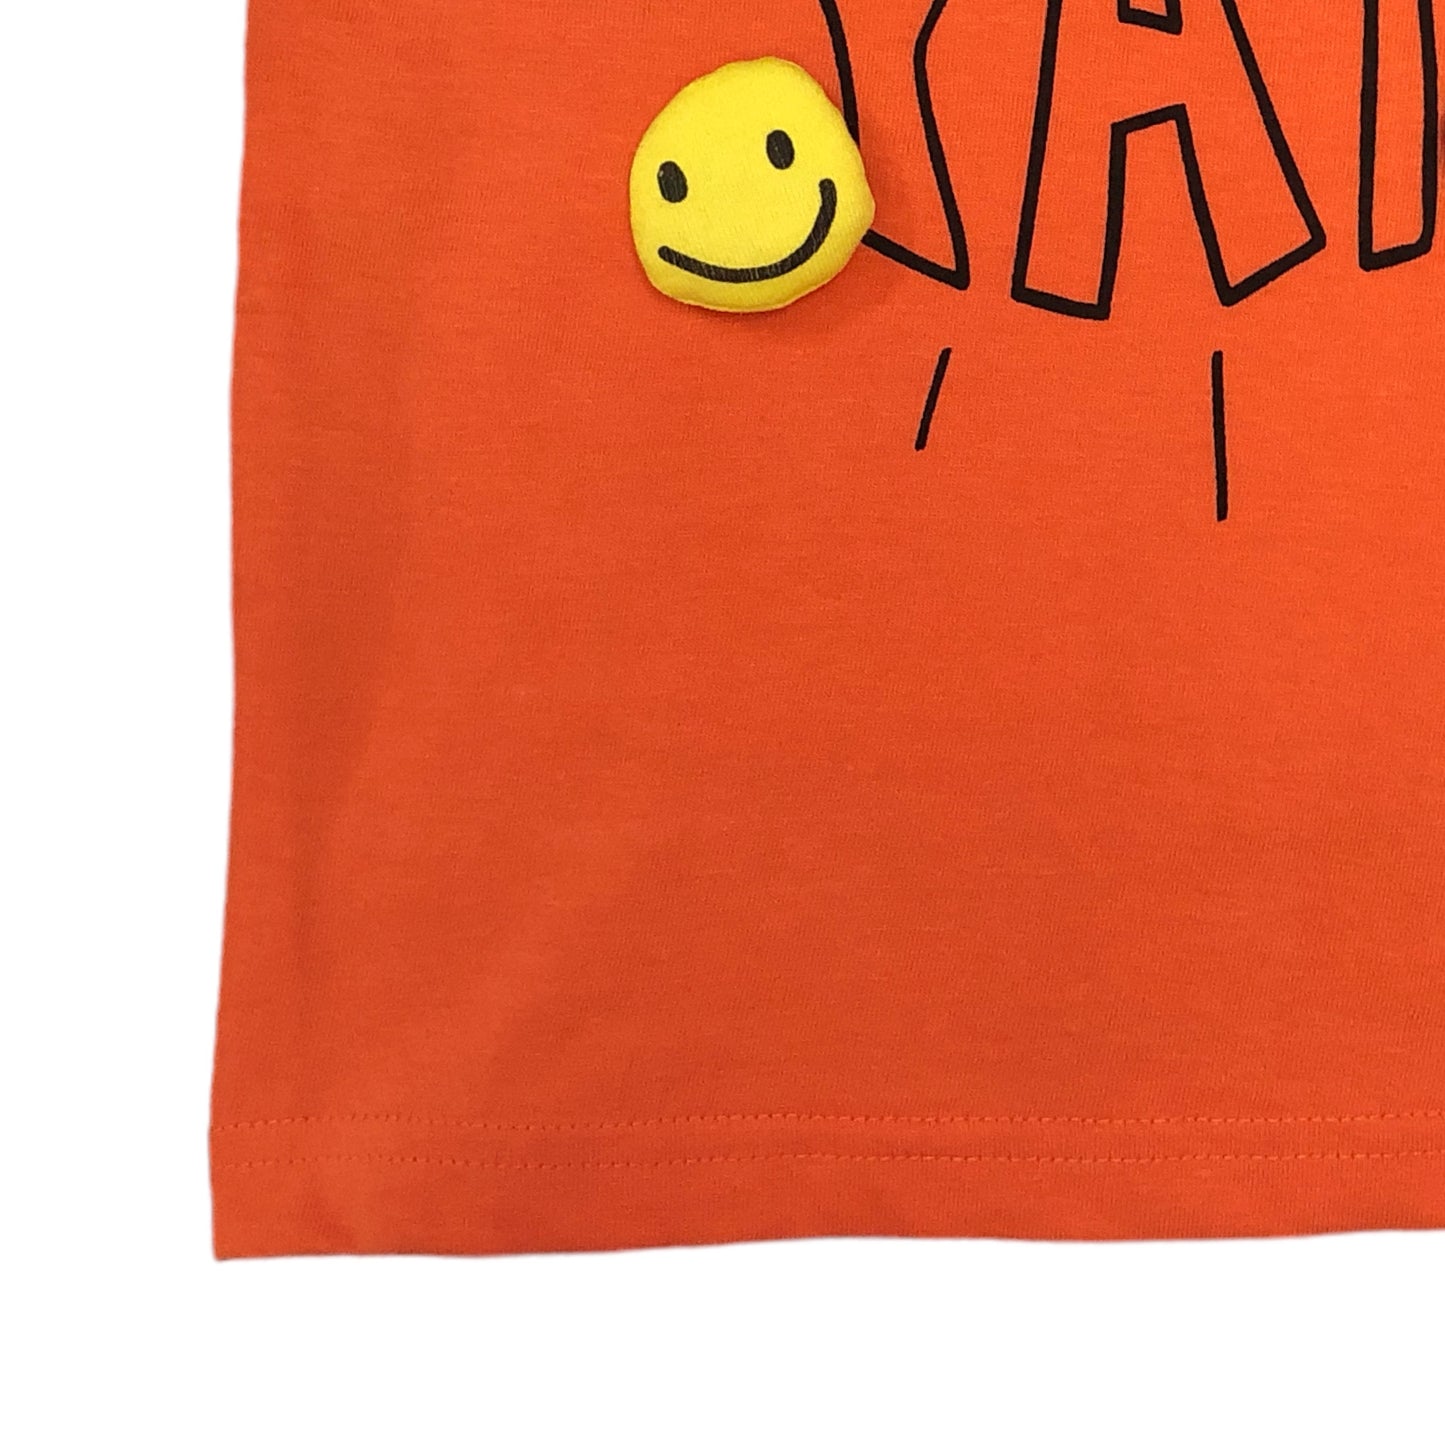 Playera naranja charms 3D para bebé niño "YAY" Losan